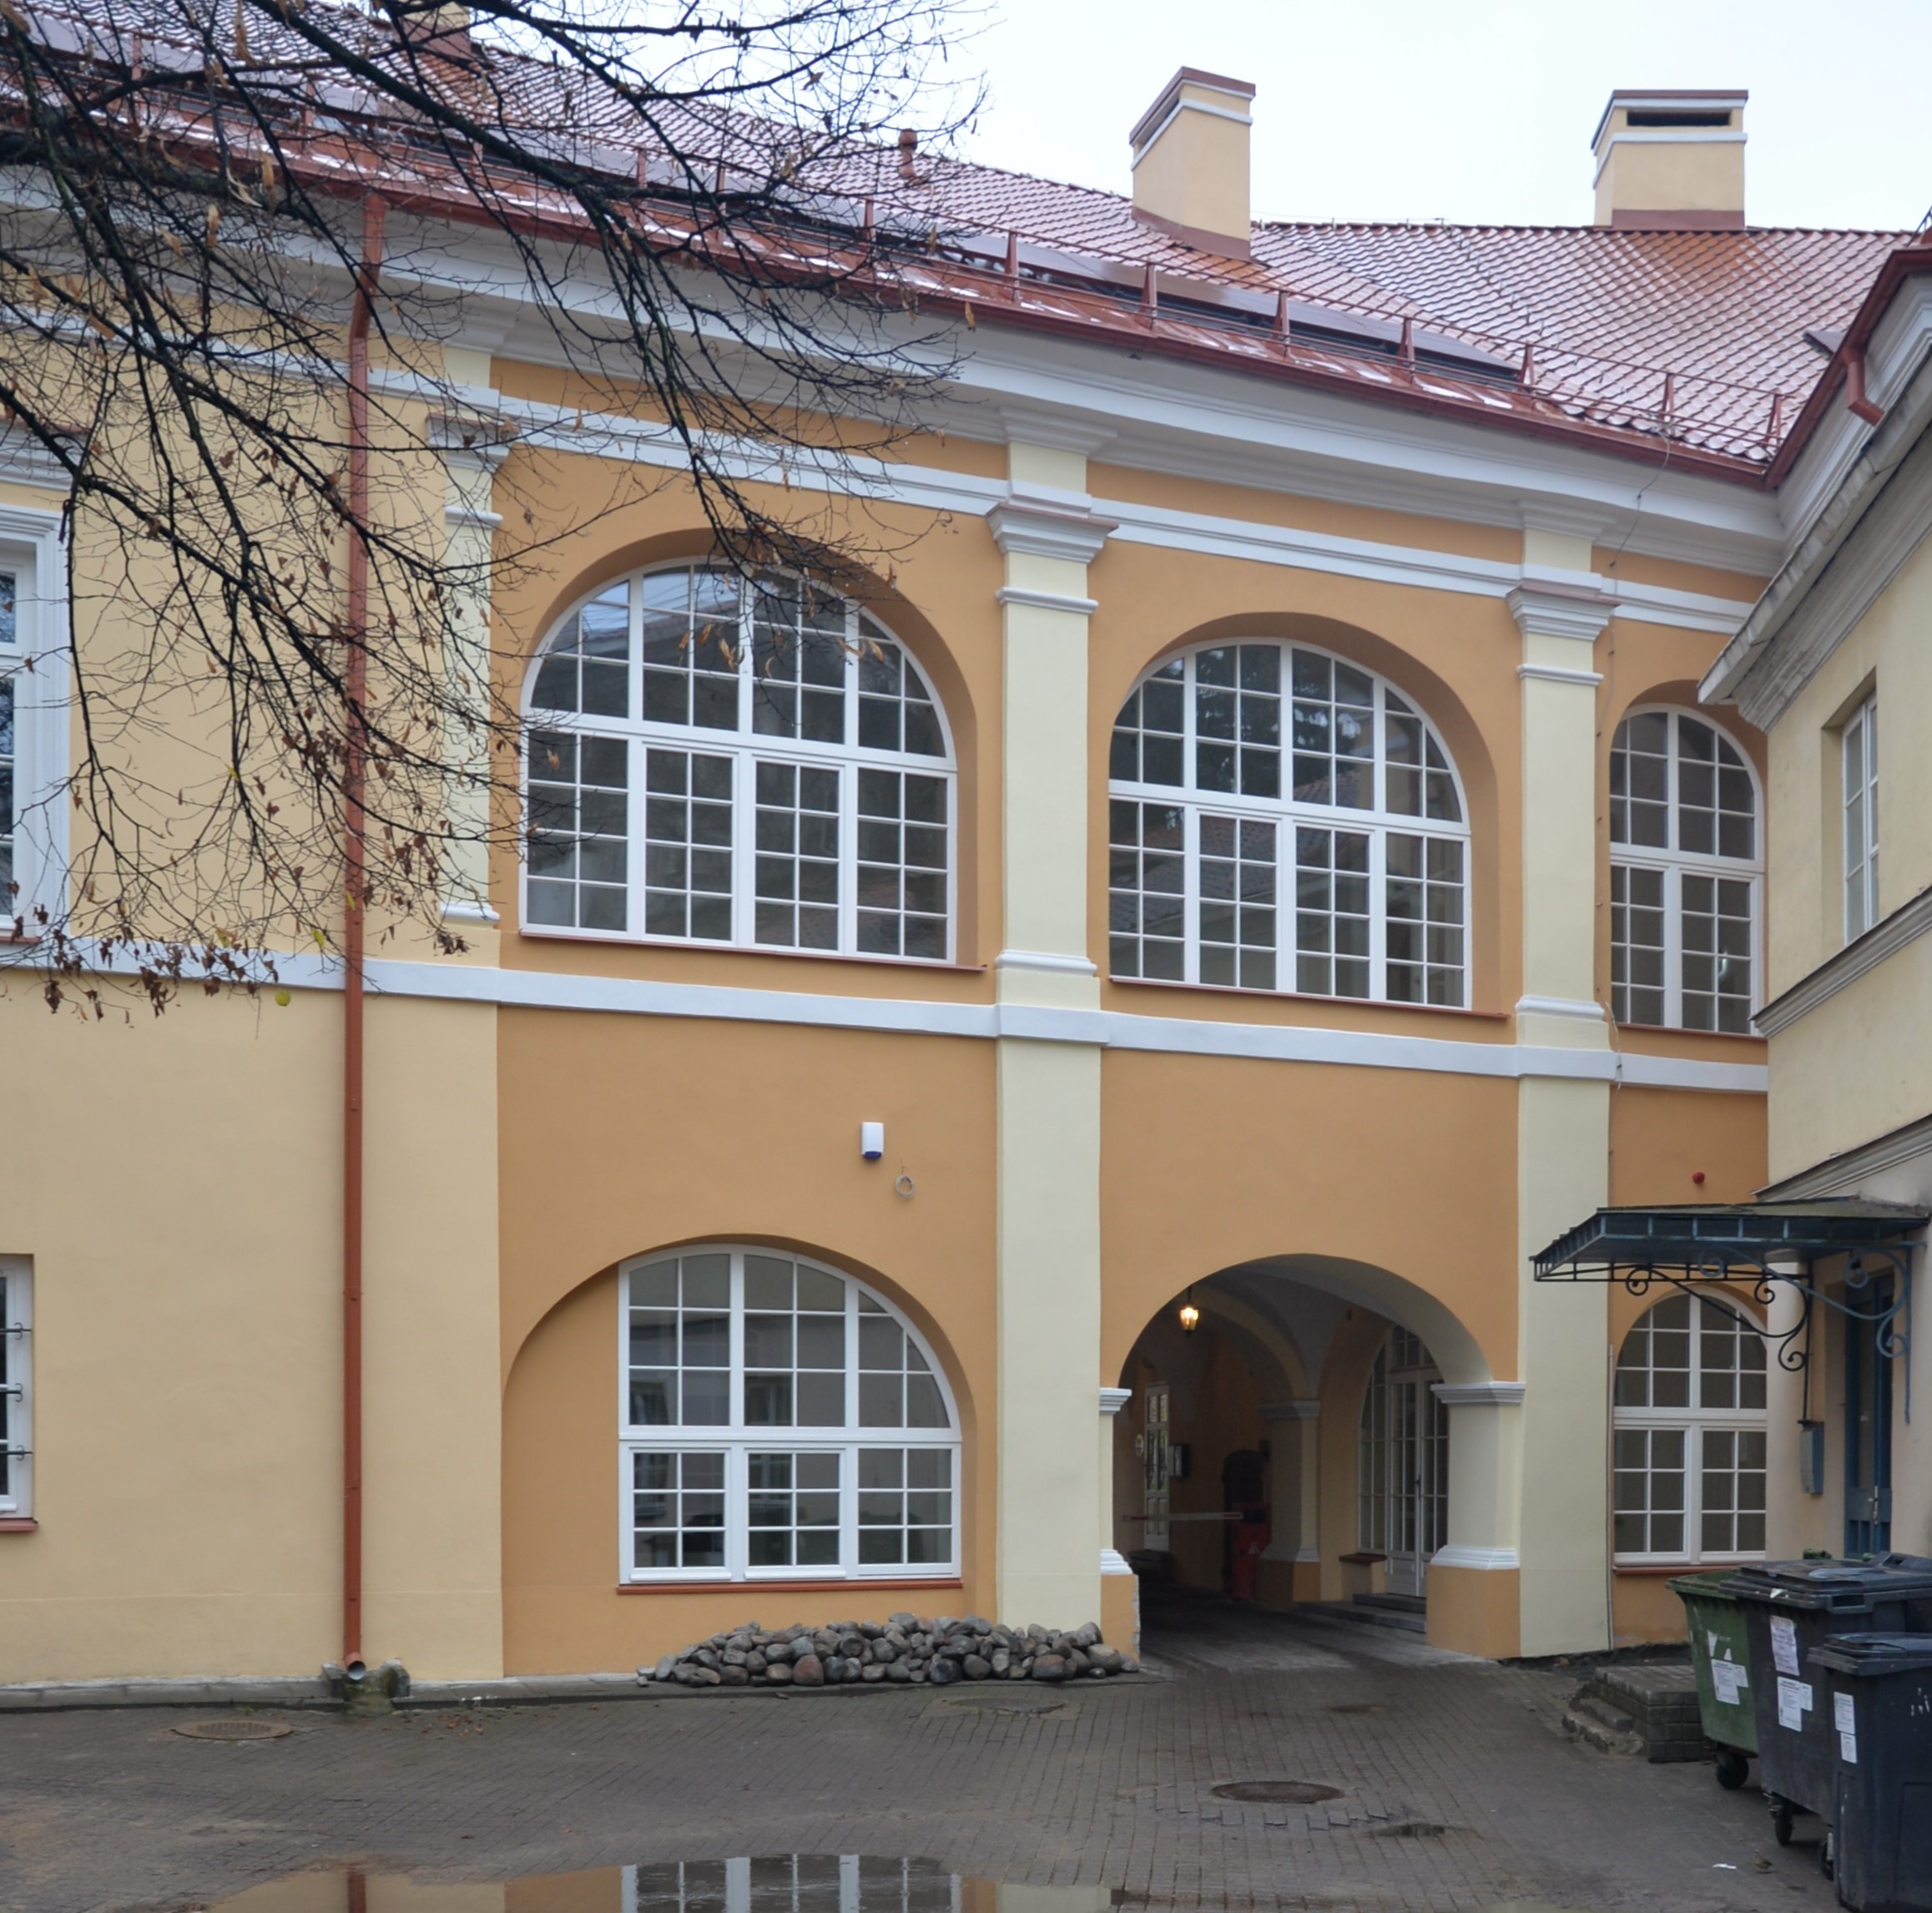 Bžostovskis Palace in Vilnius